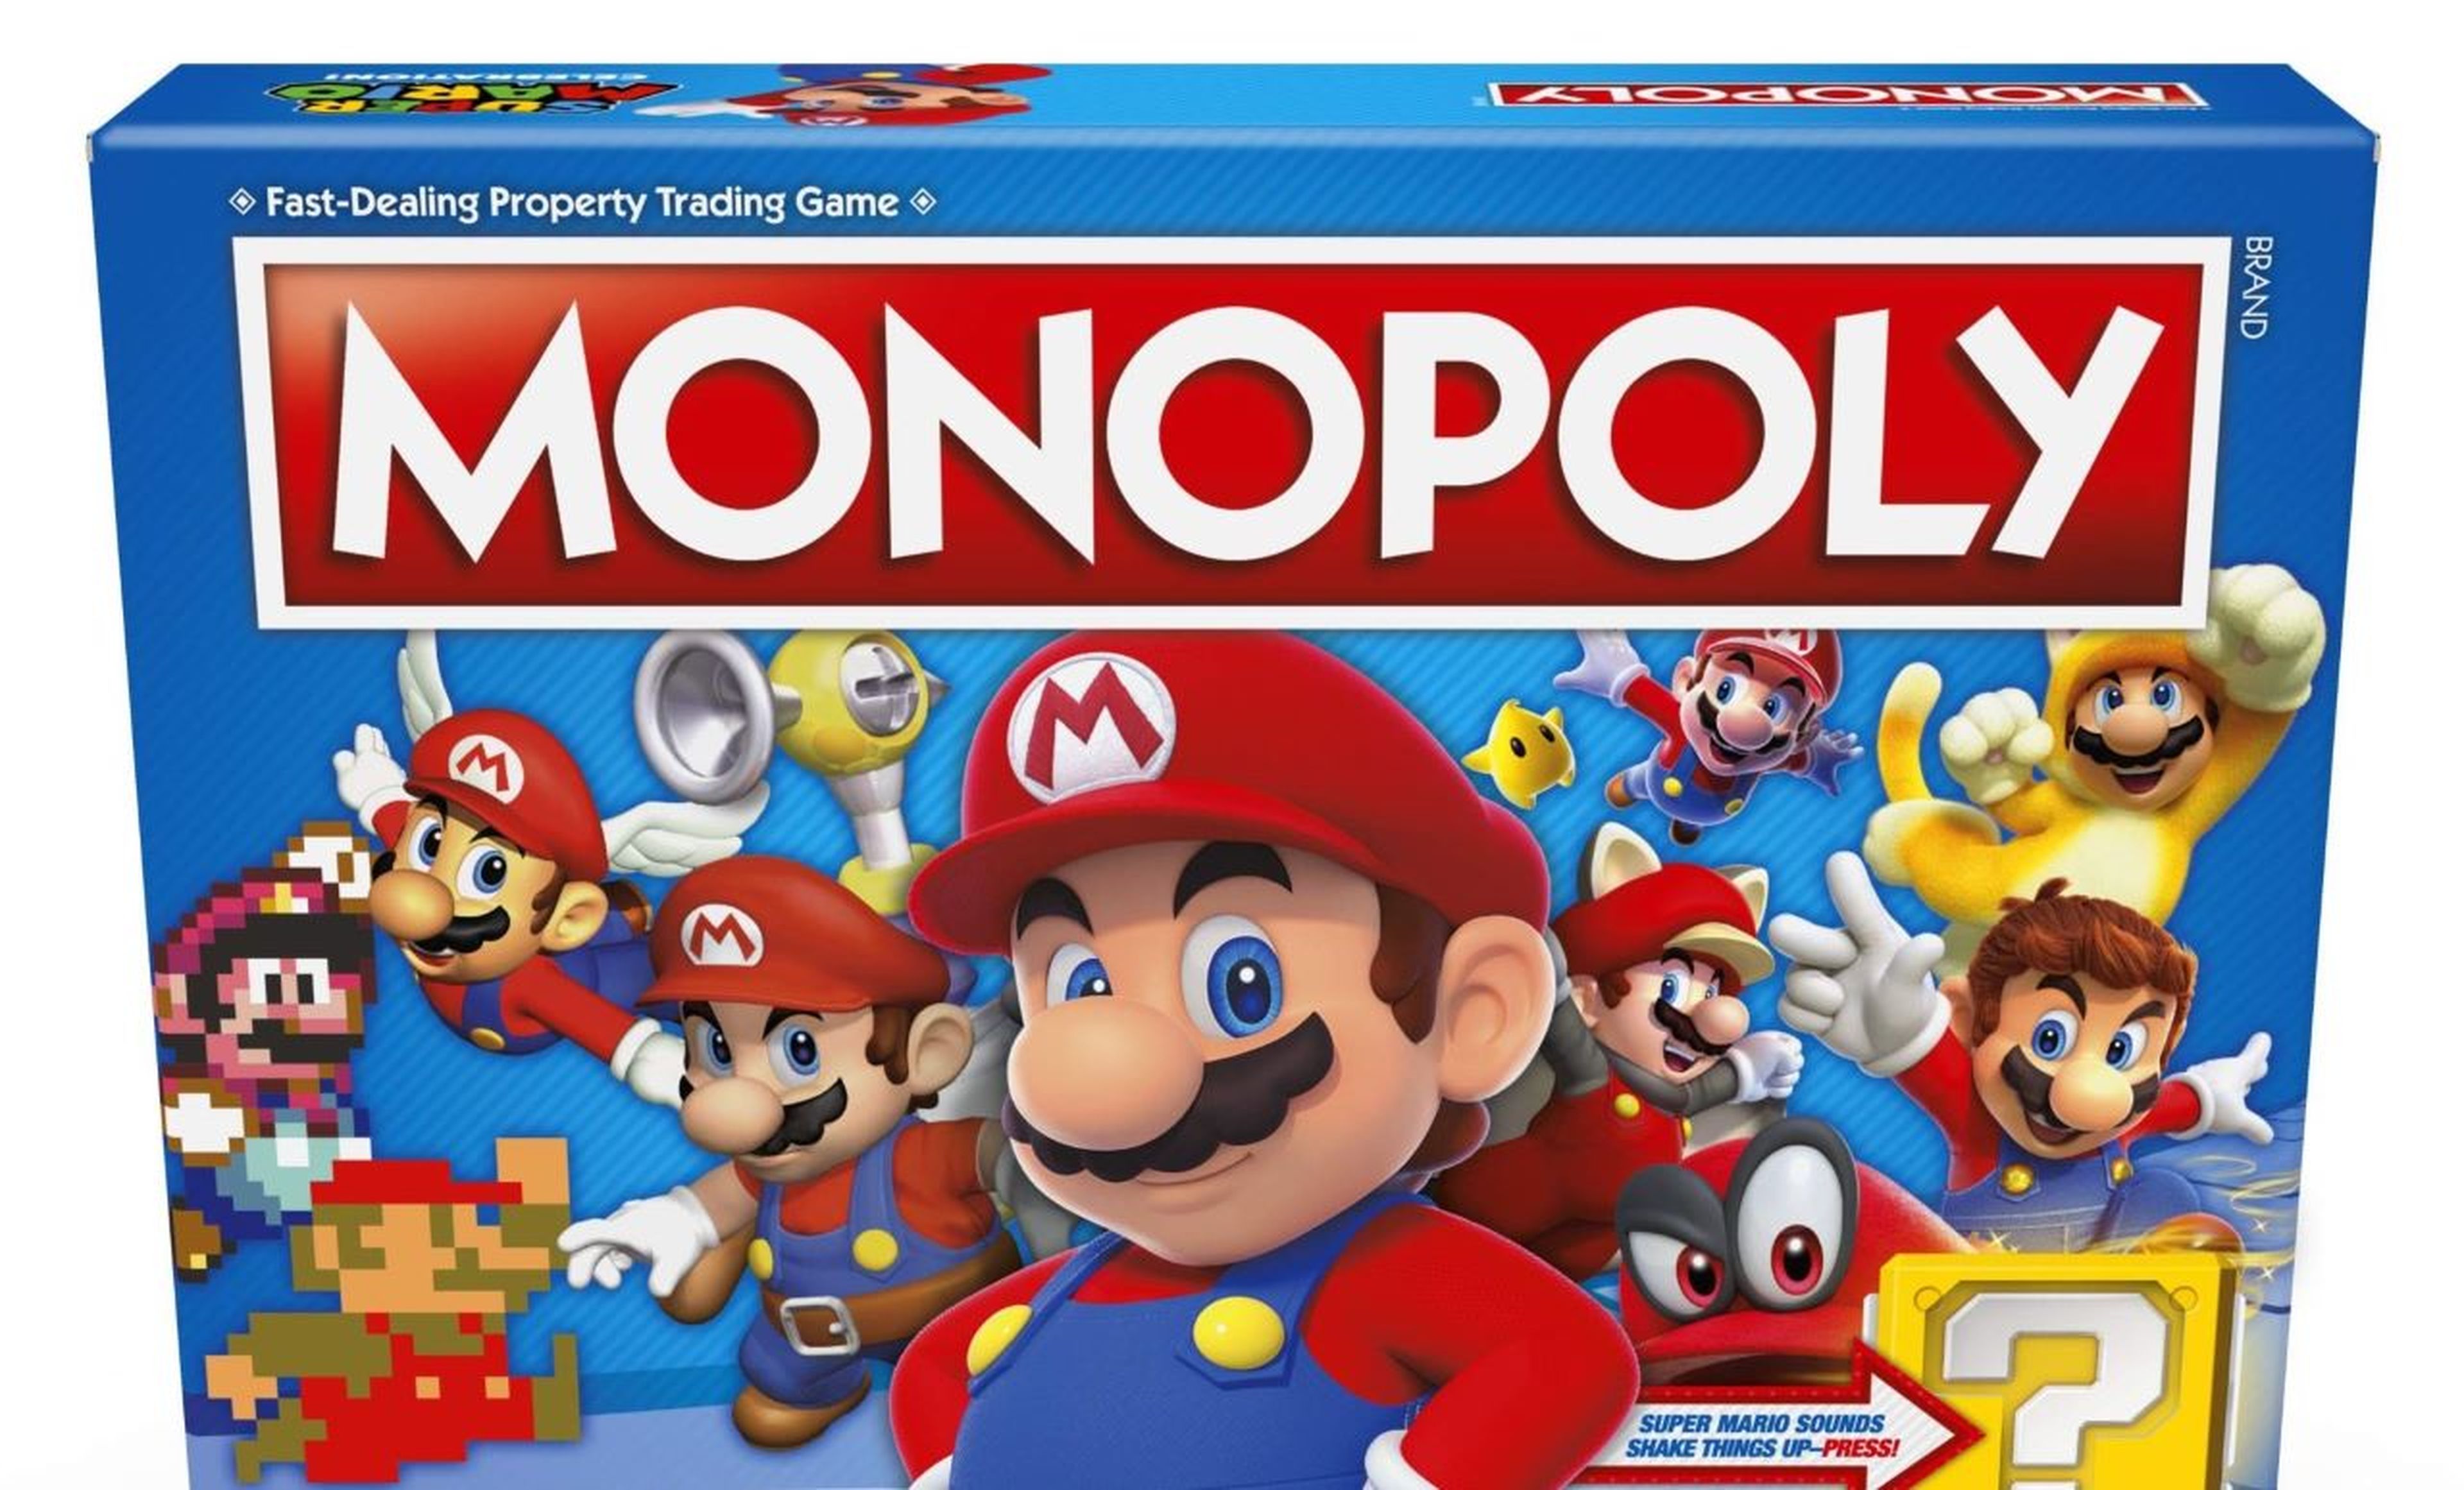 Ediciones de Monopoly basadas en videojuegos